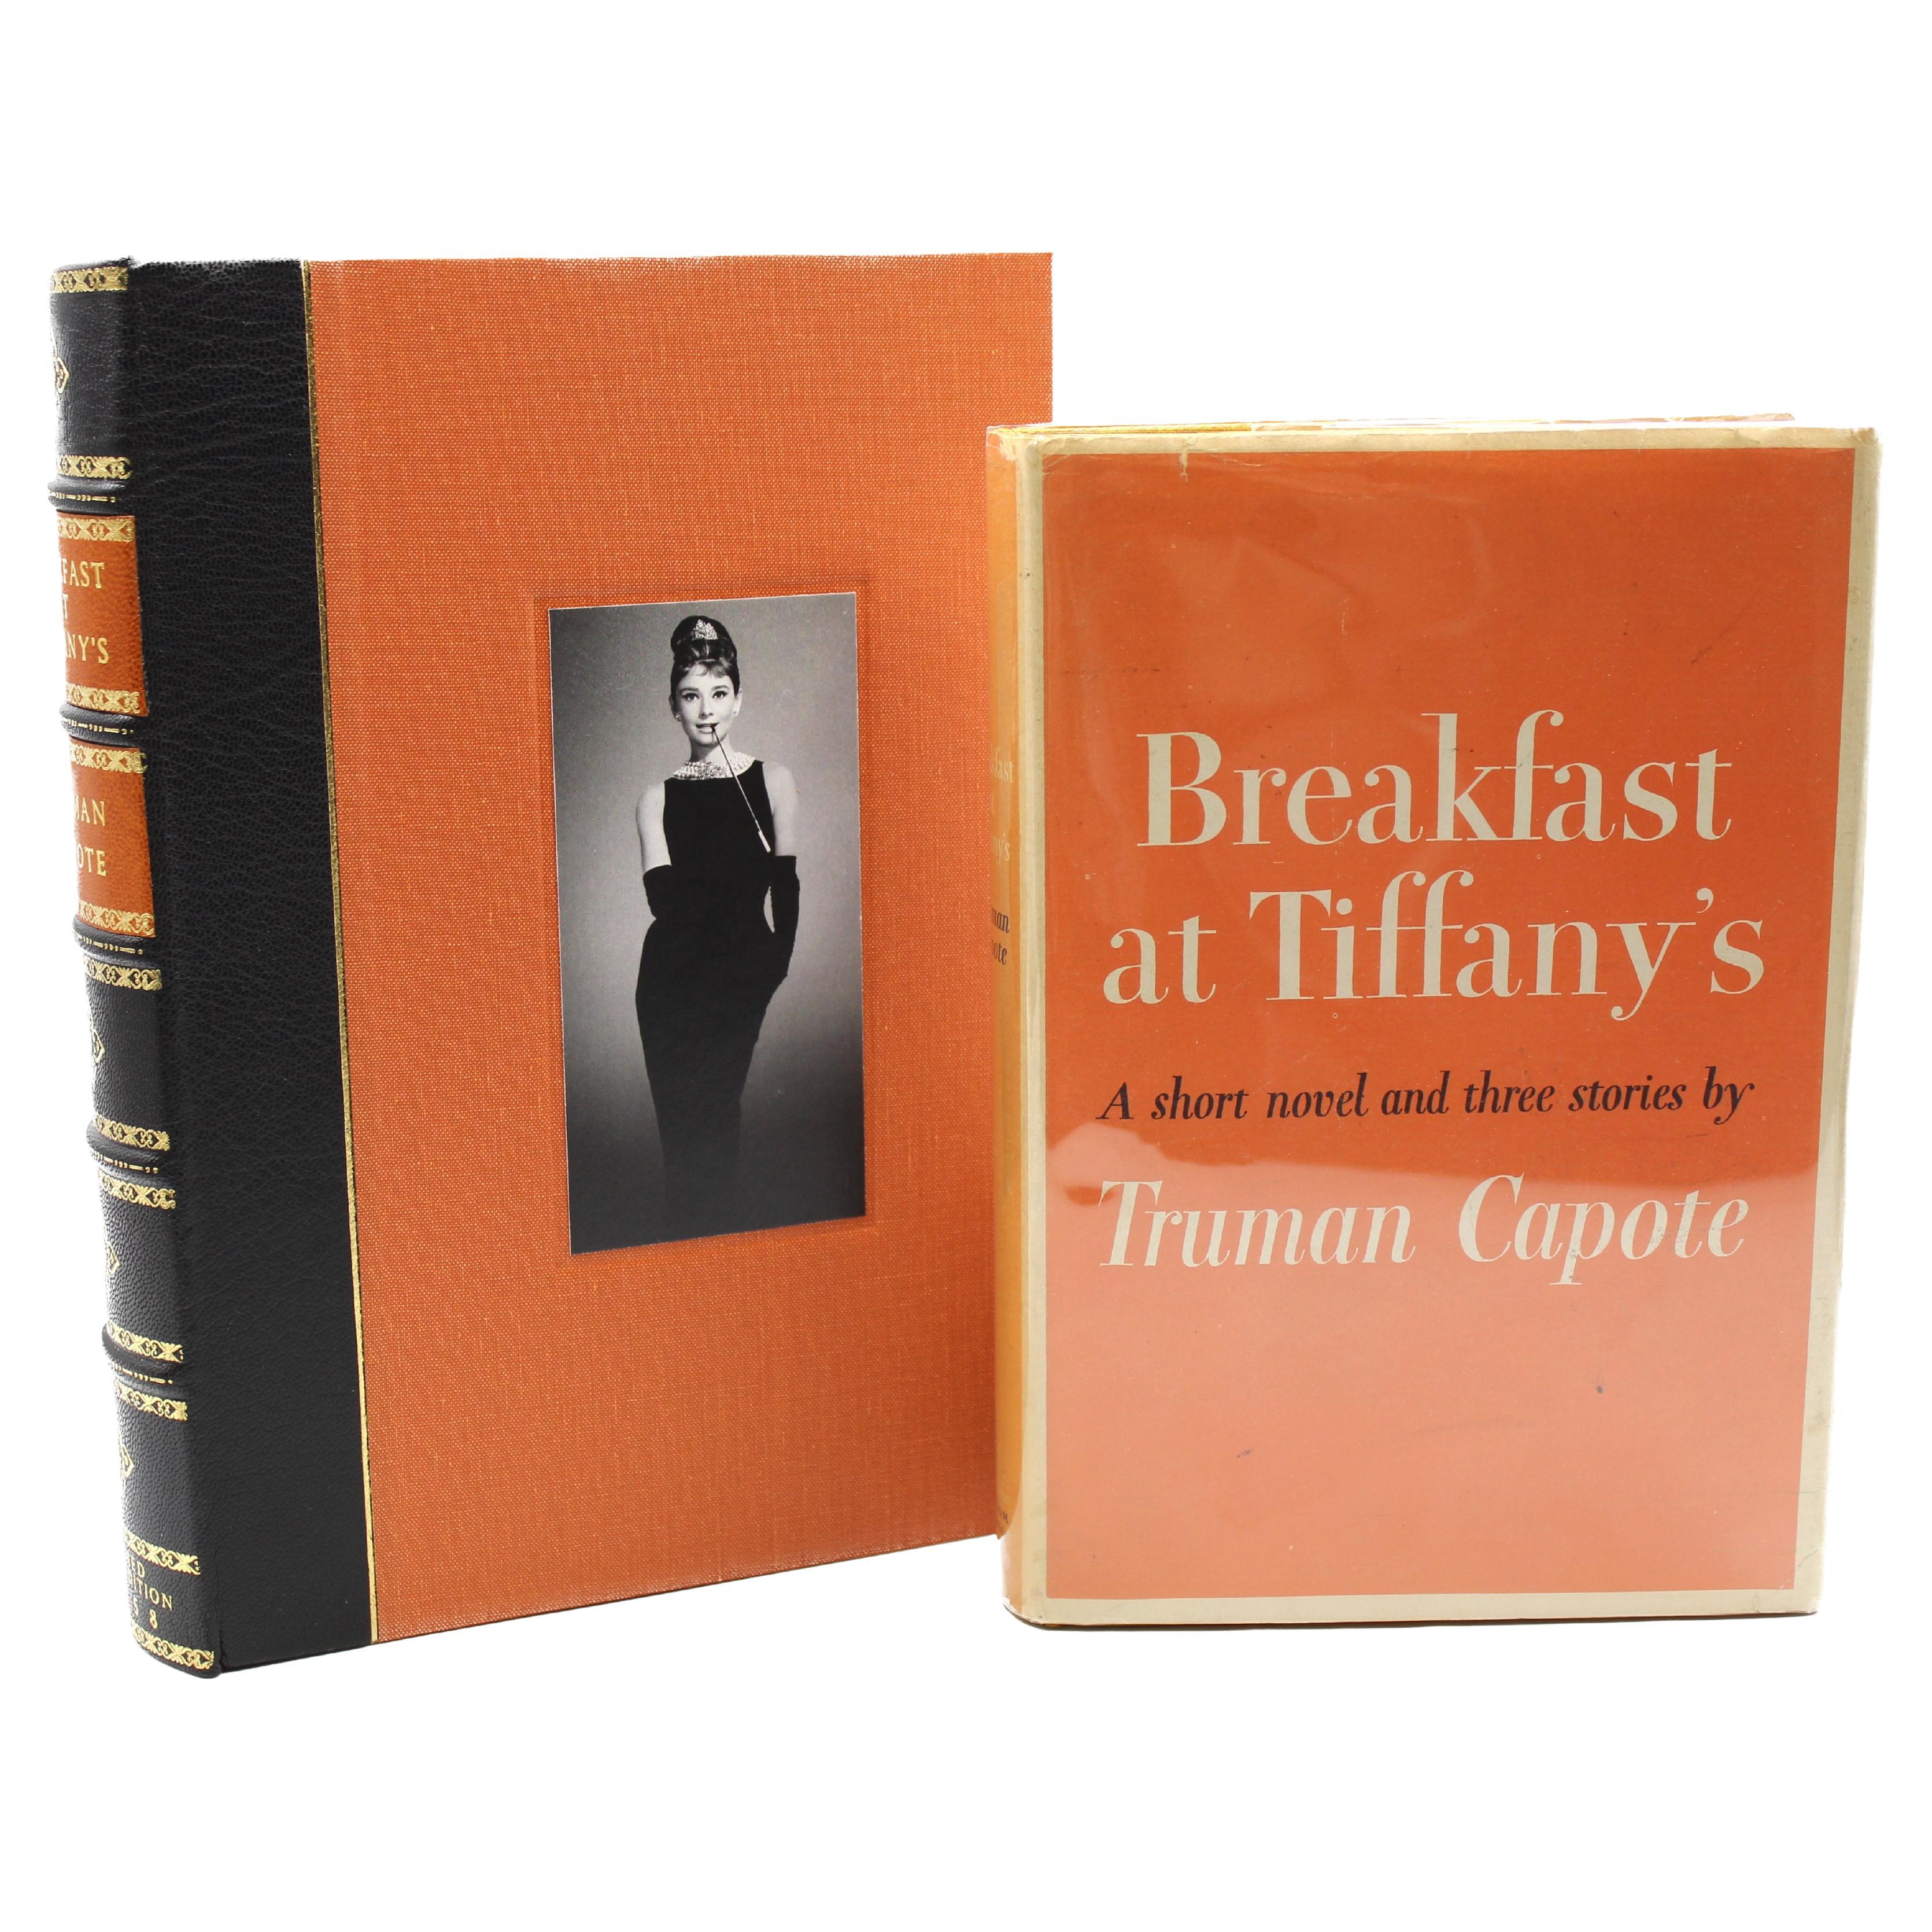 Breakfast at Tiffany's, signé par Truman Capote, première édition, 1958